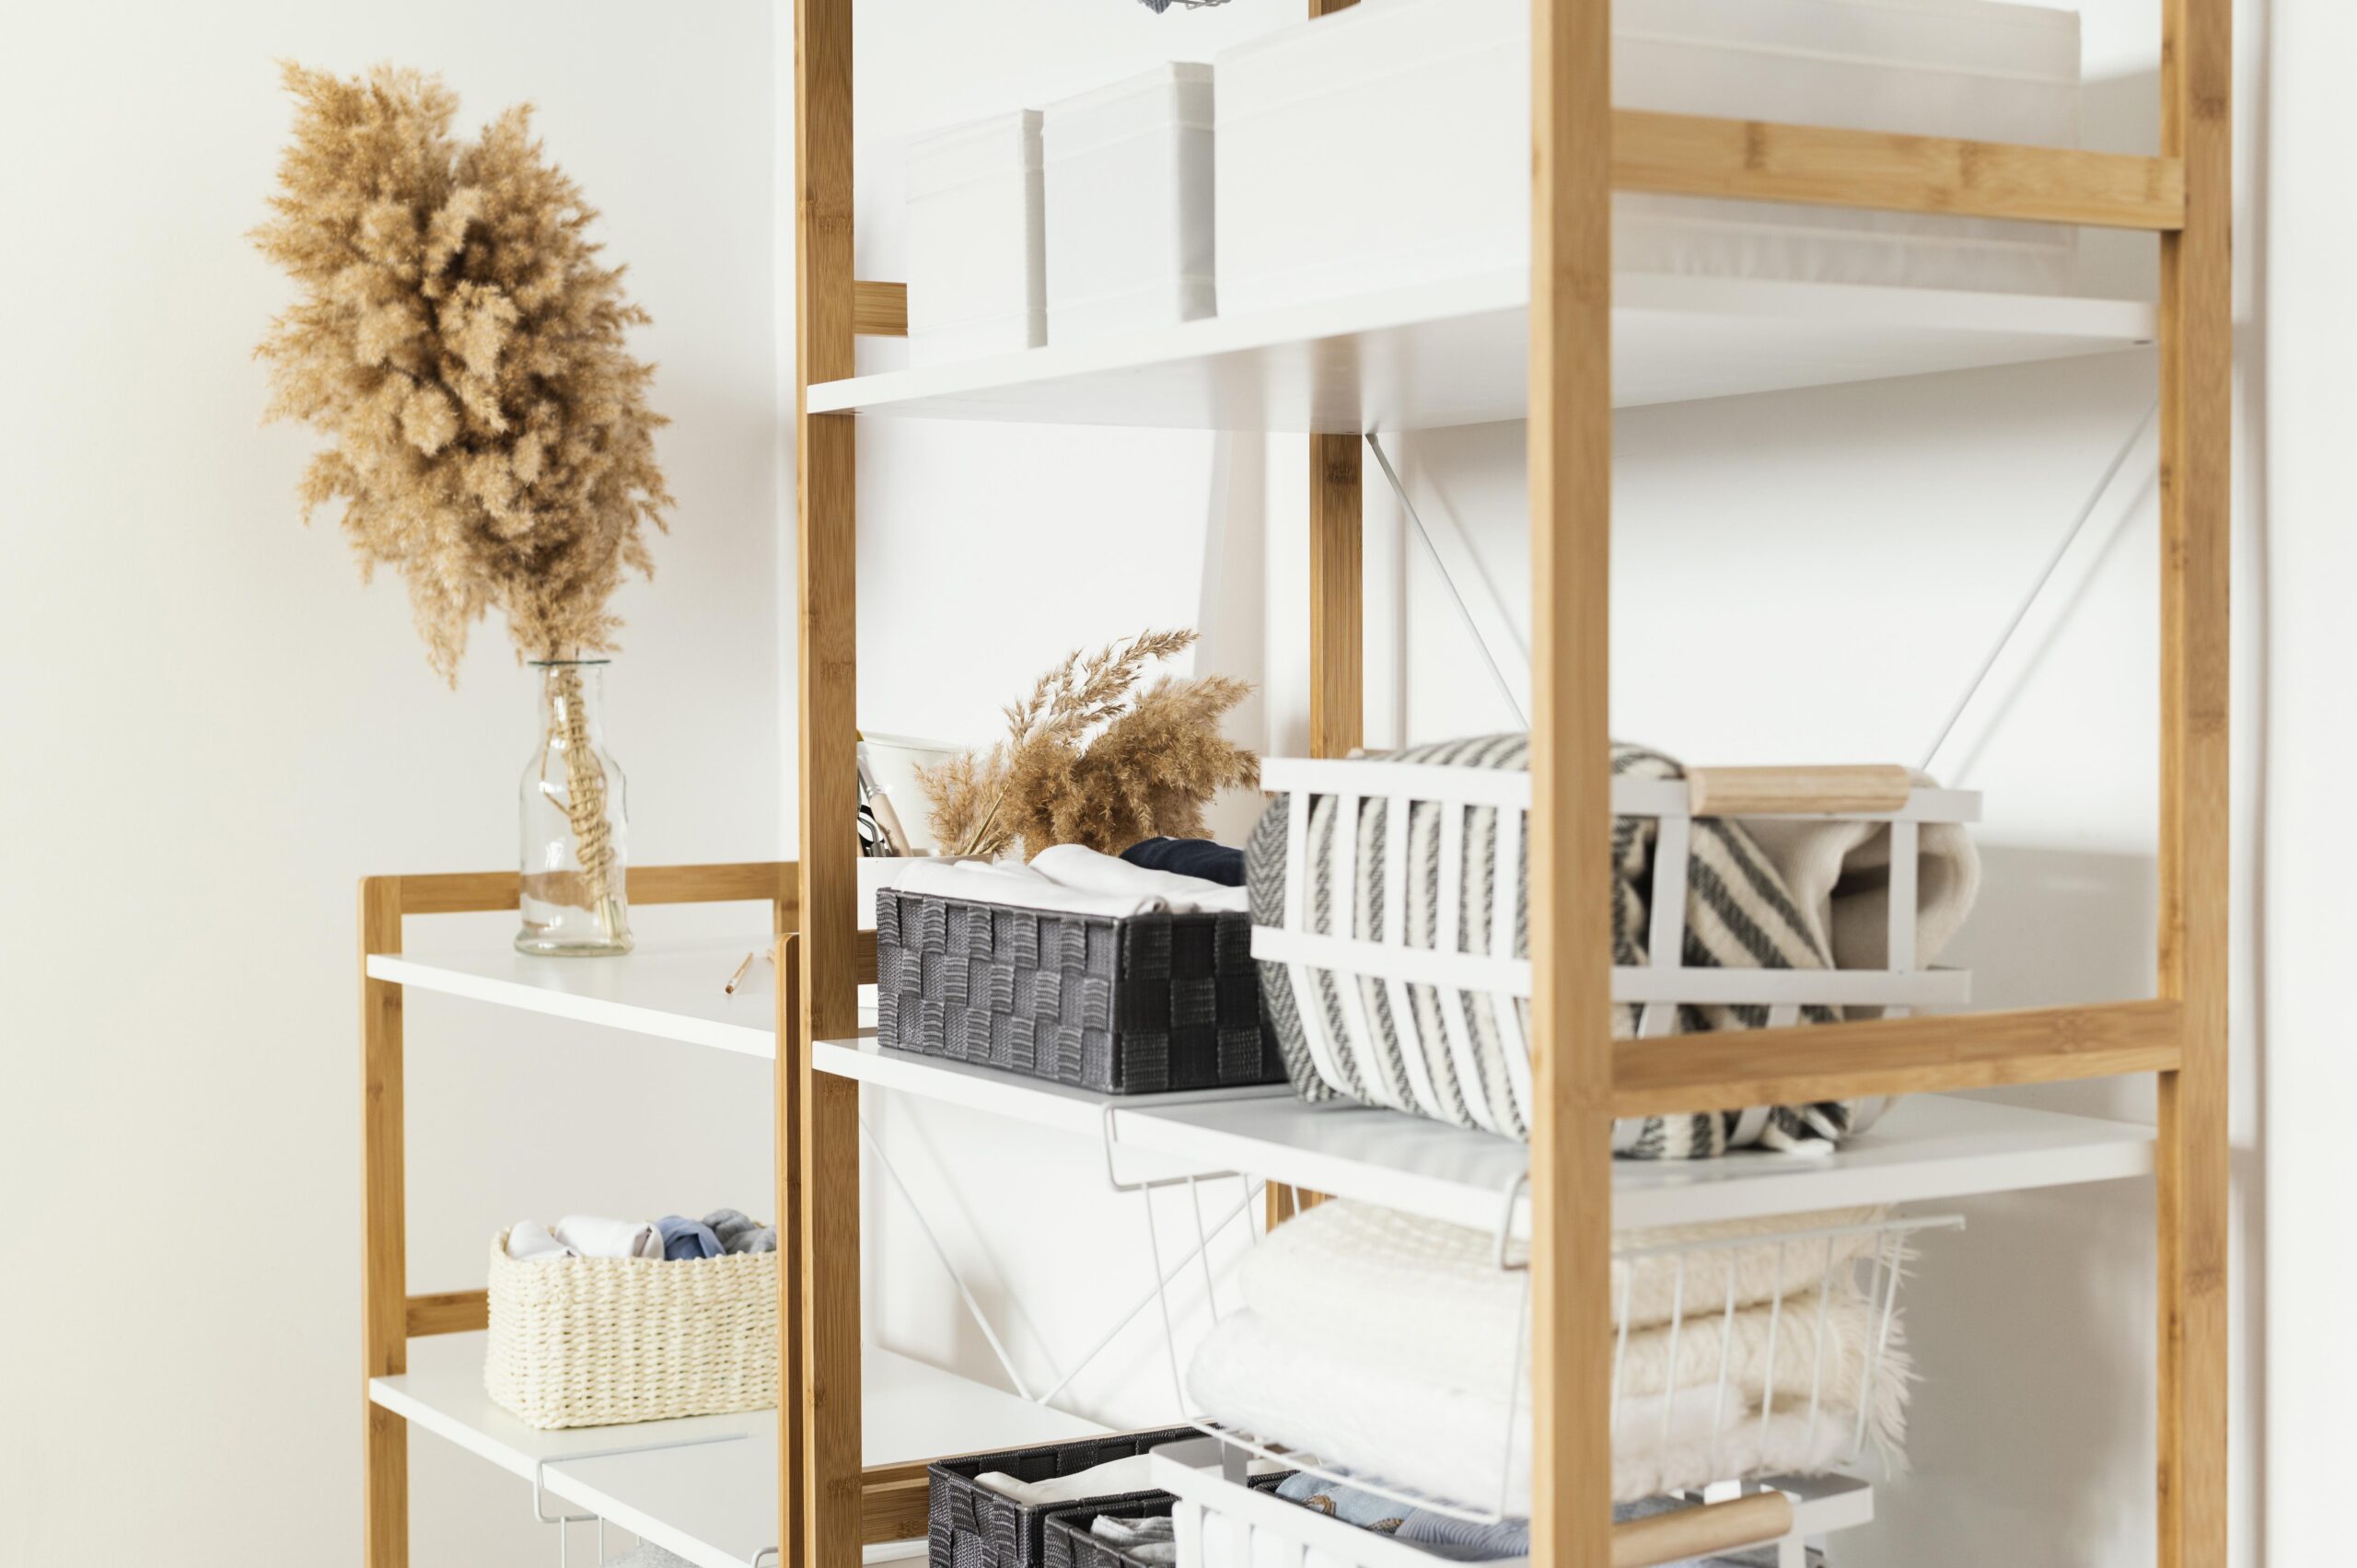 Organizzare spazi casa: tips per massimizzare la funzionalità